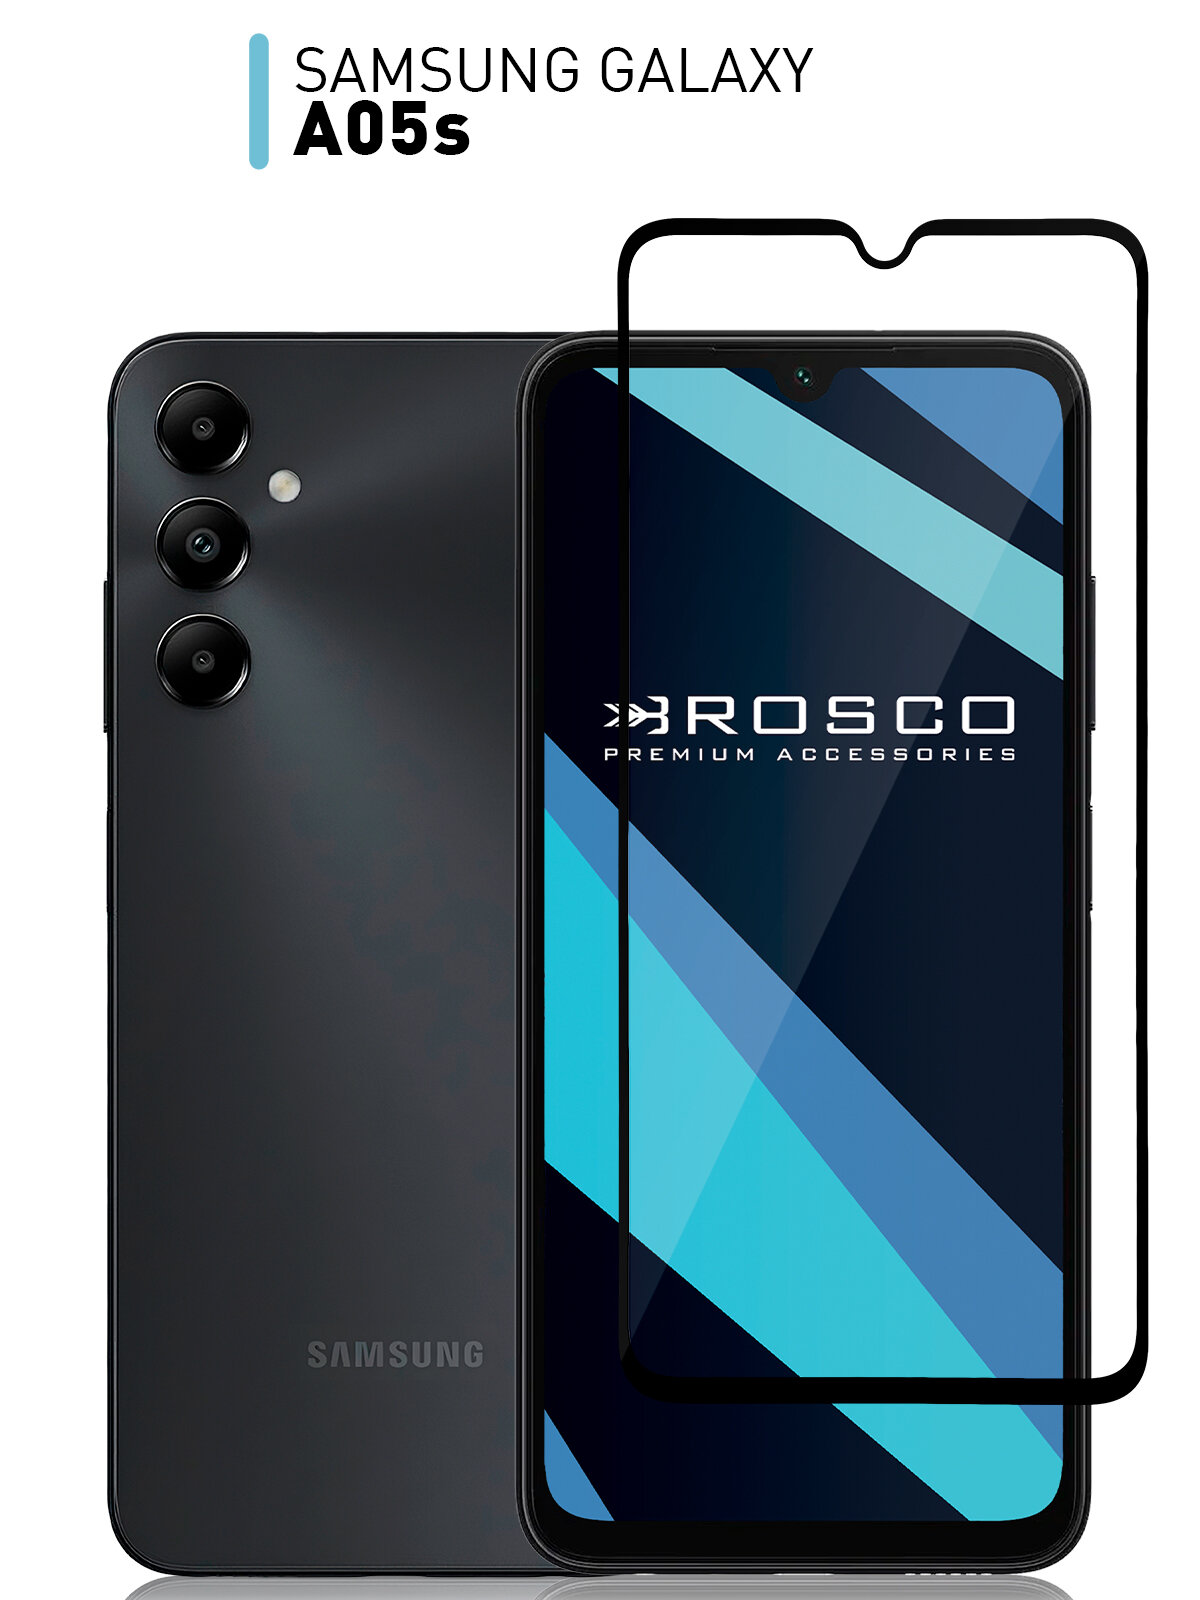 Защитное стекло ROSCO для Samsung Galaxy A05s (Самсунг Галакси А05с) противоударное стекло, олеофобное покрытие, прозрачное стекло, с рамкой